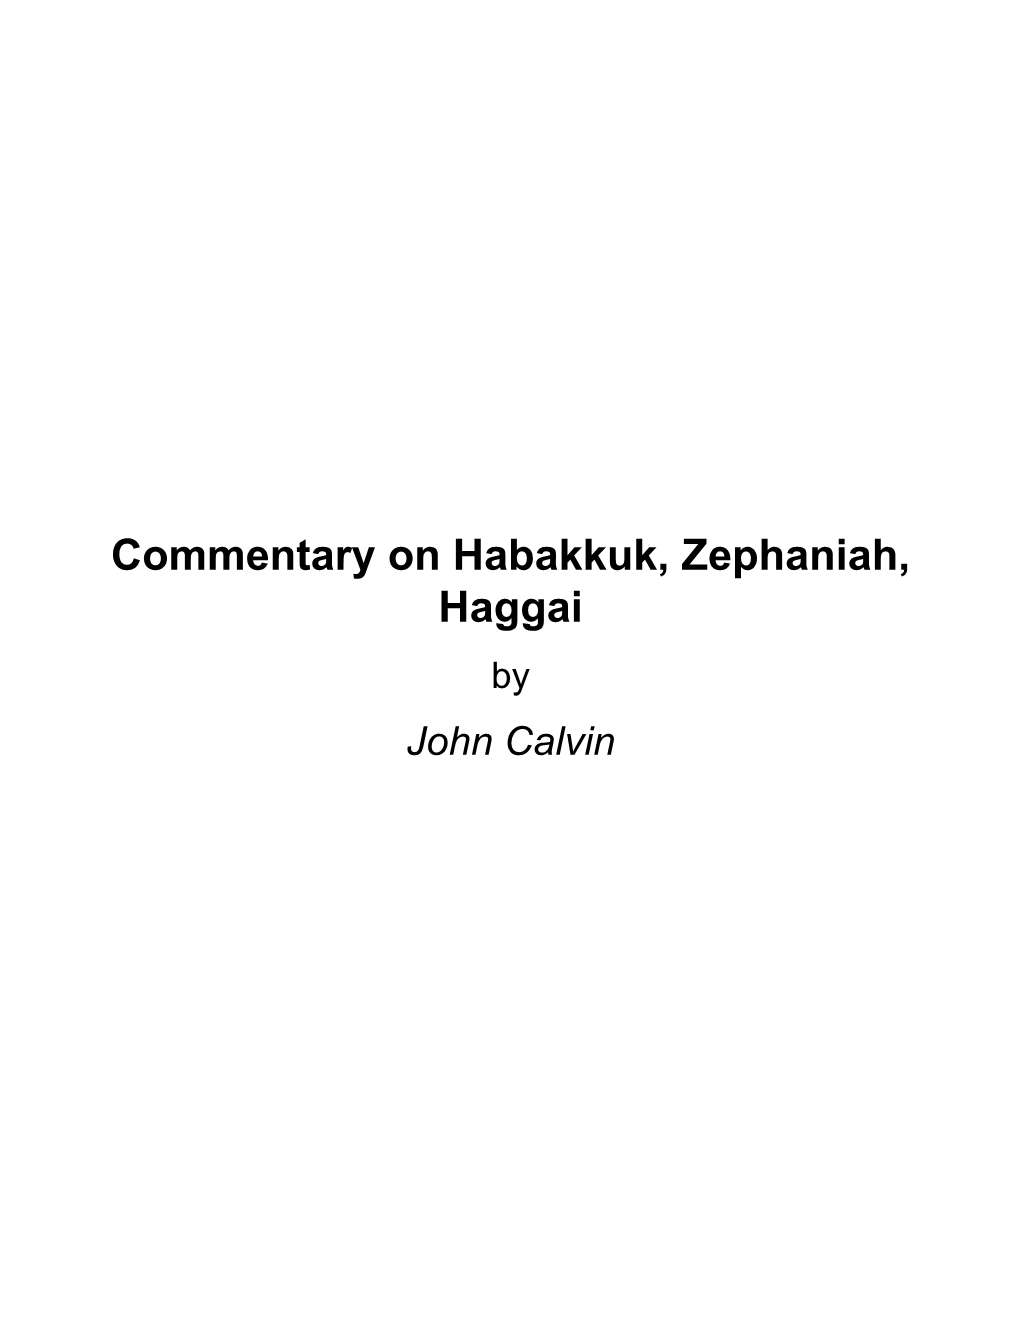 Commentary on Habakkuk, Zephaniah, Haggai by John Calvin About Commentary on Habakkuk, Zephaniah, Haggai by John Calvin